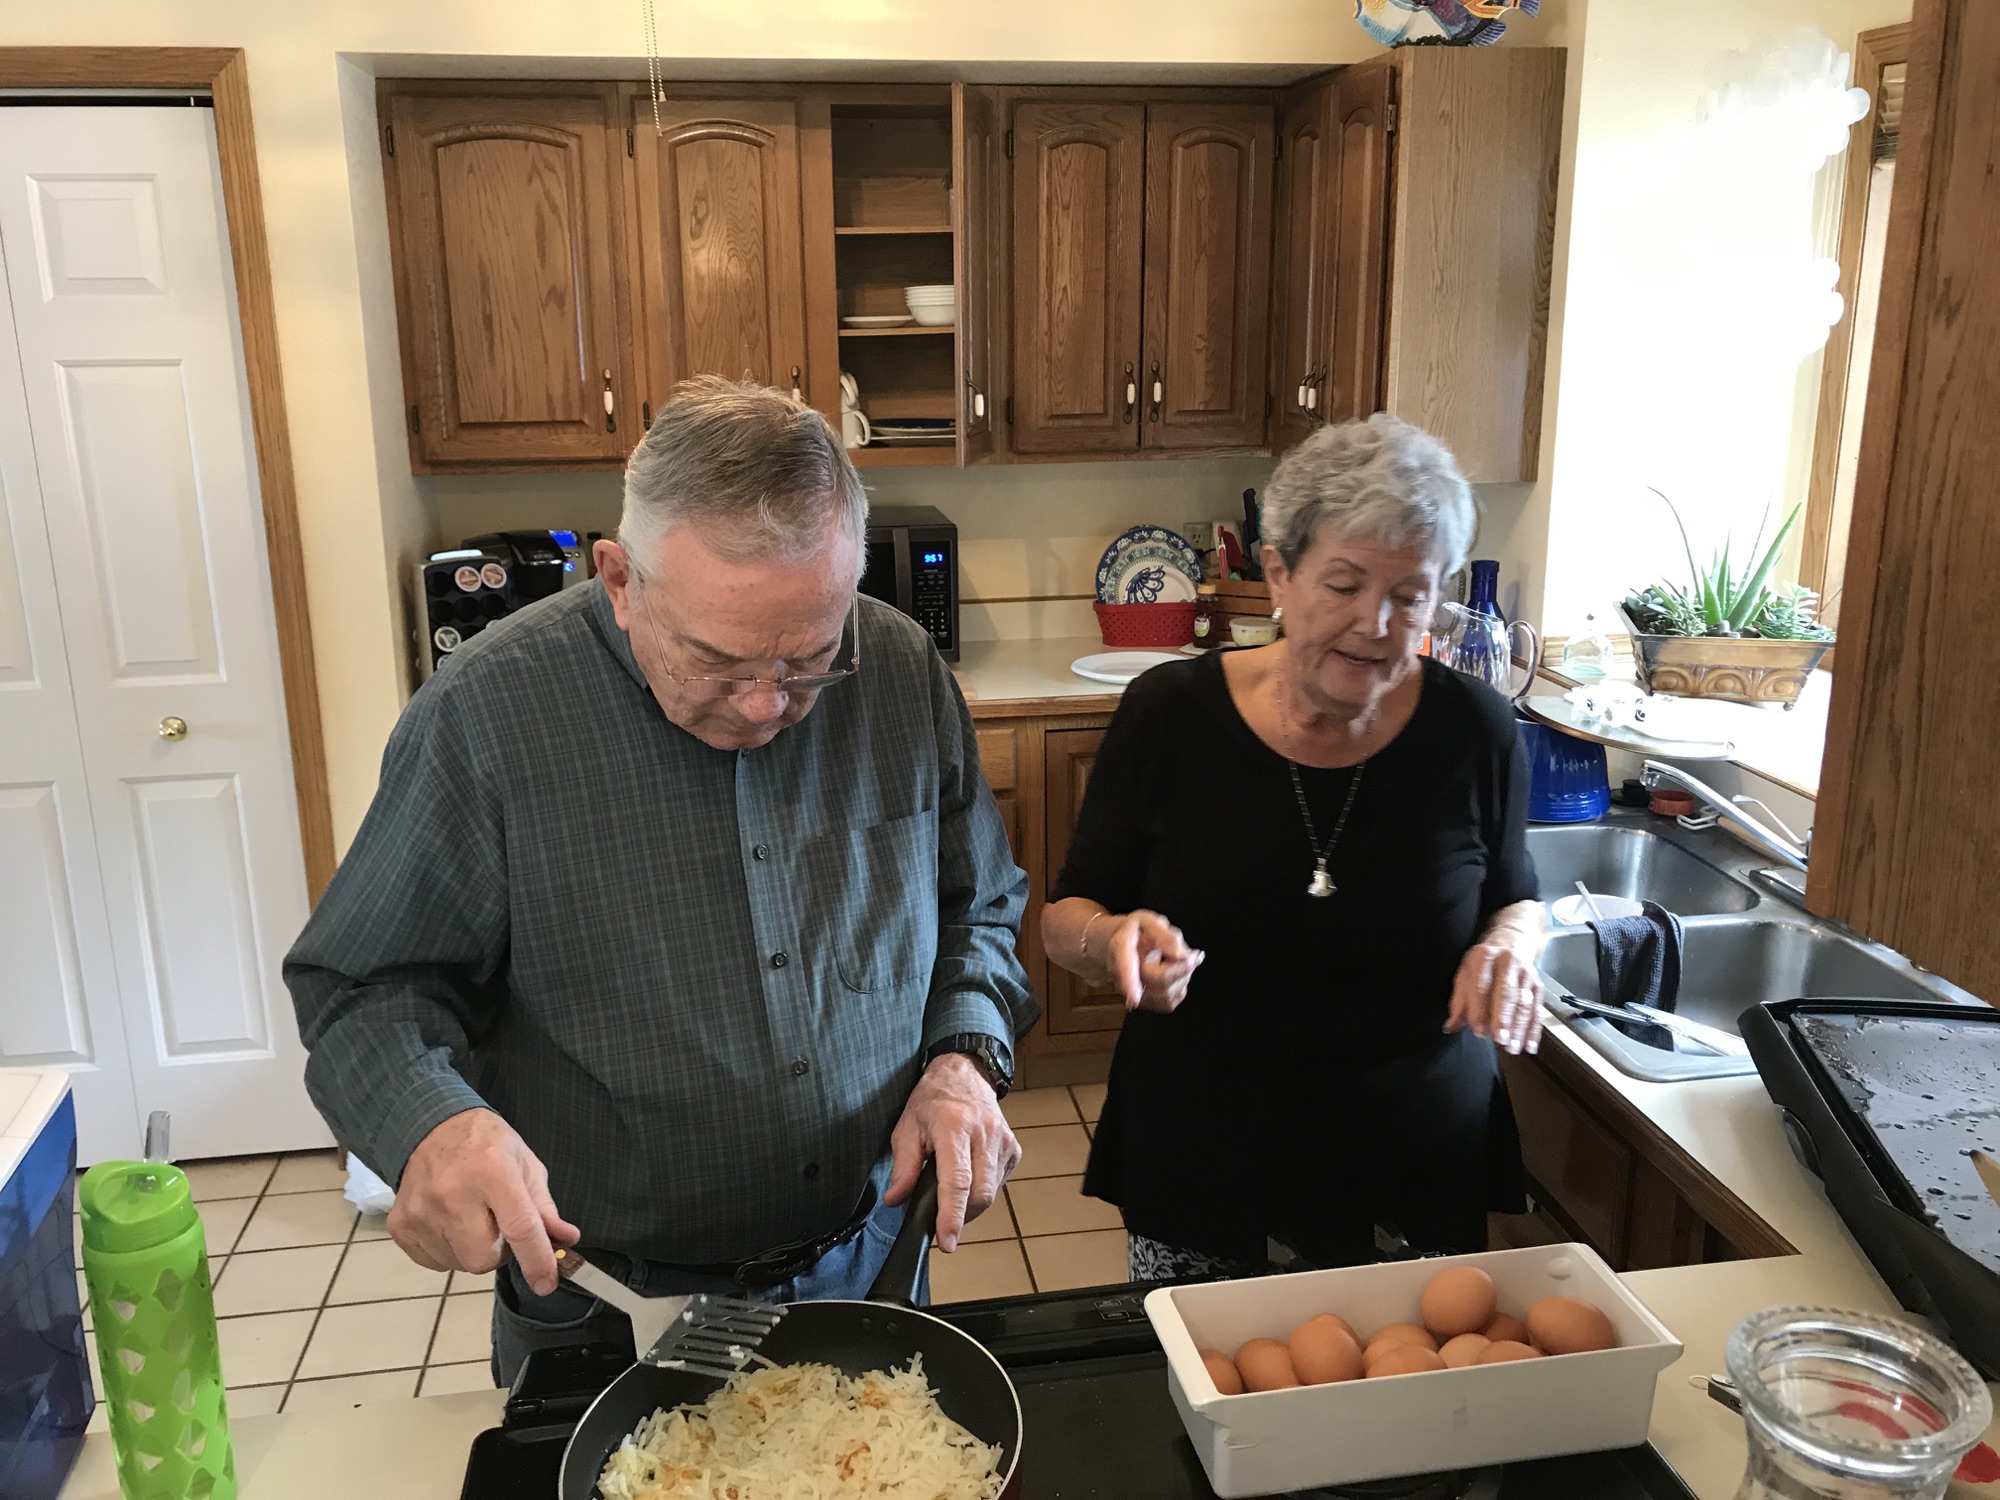 Grandpa and grandma making breakfast